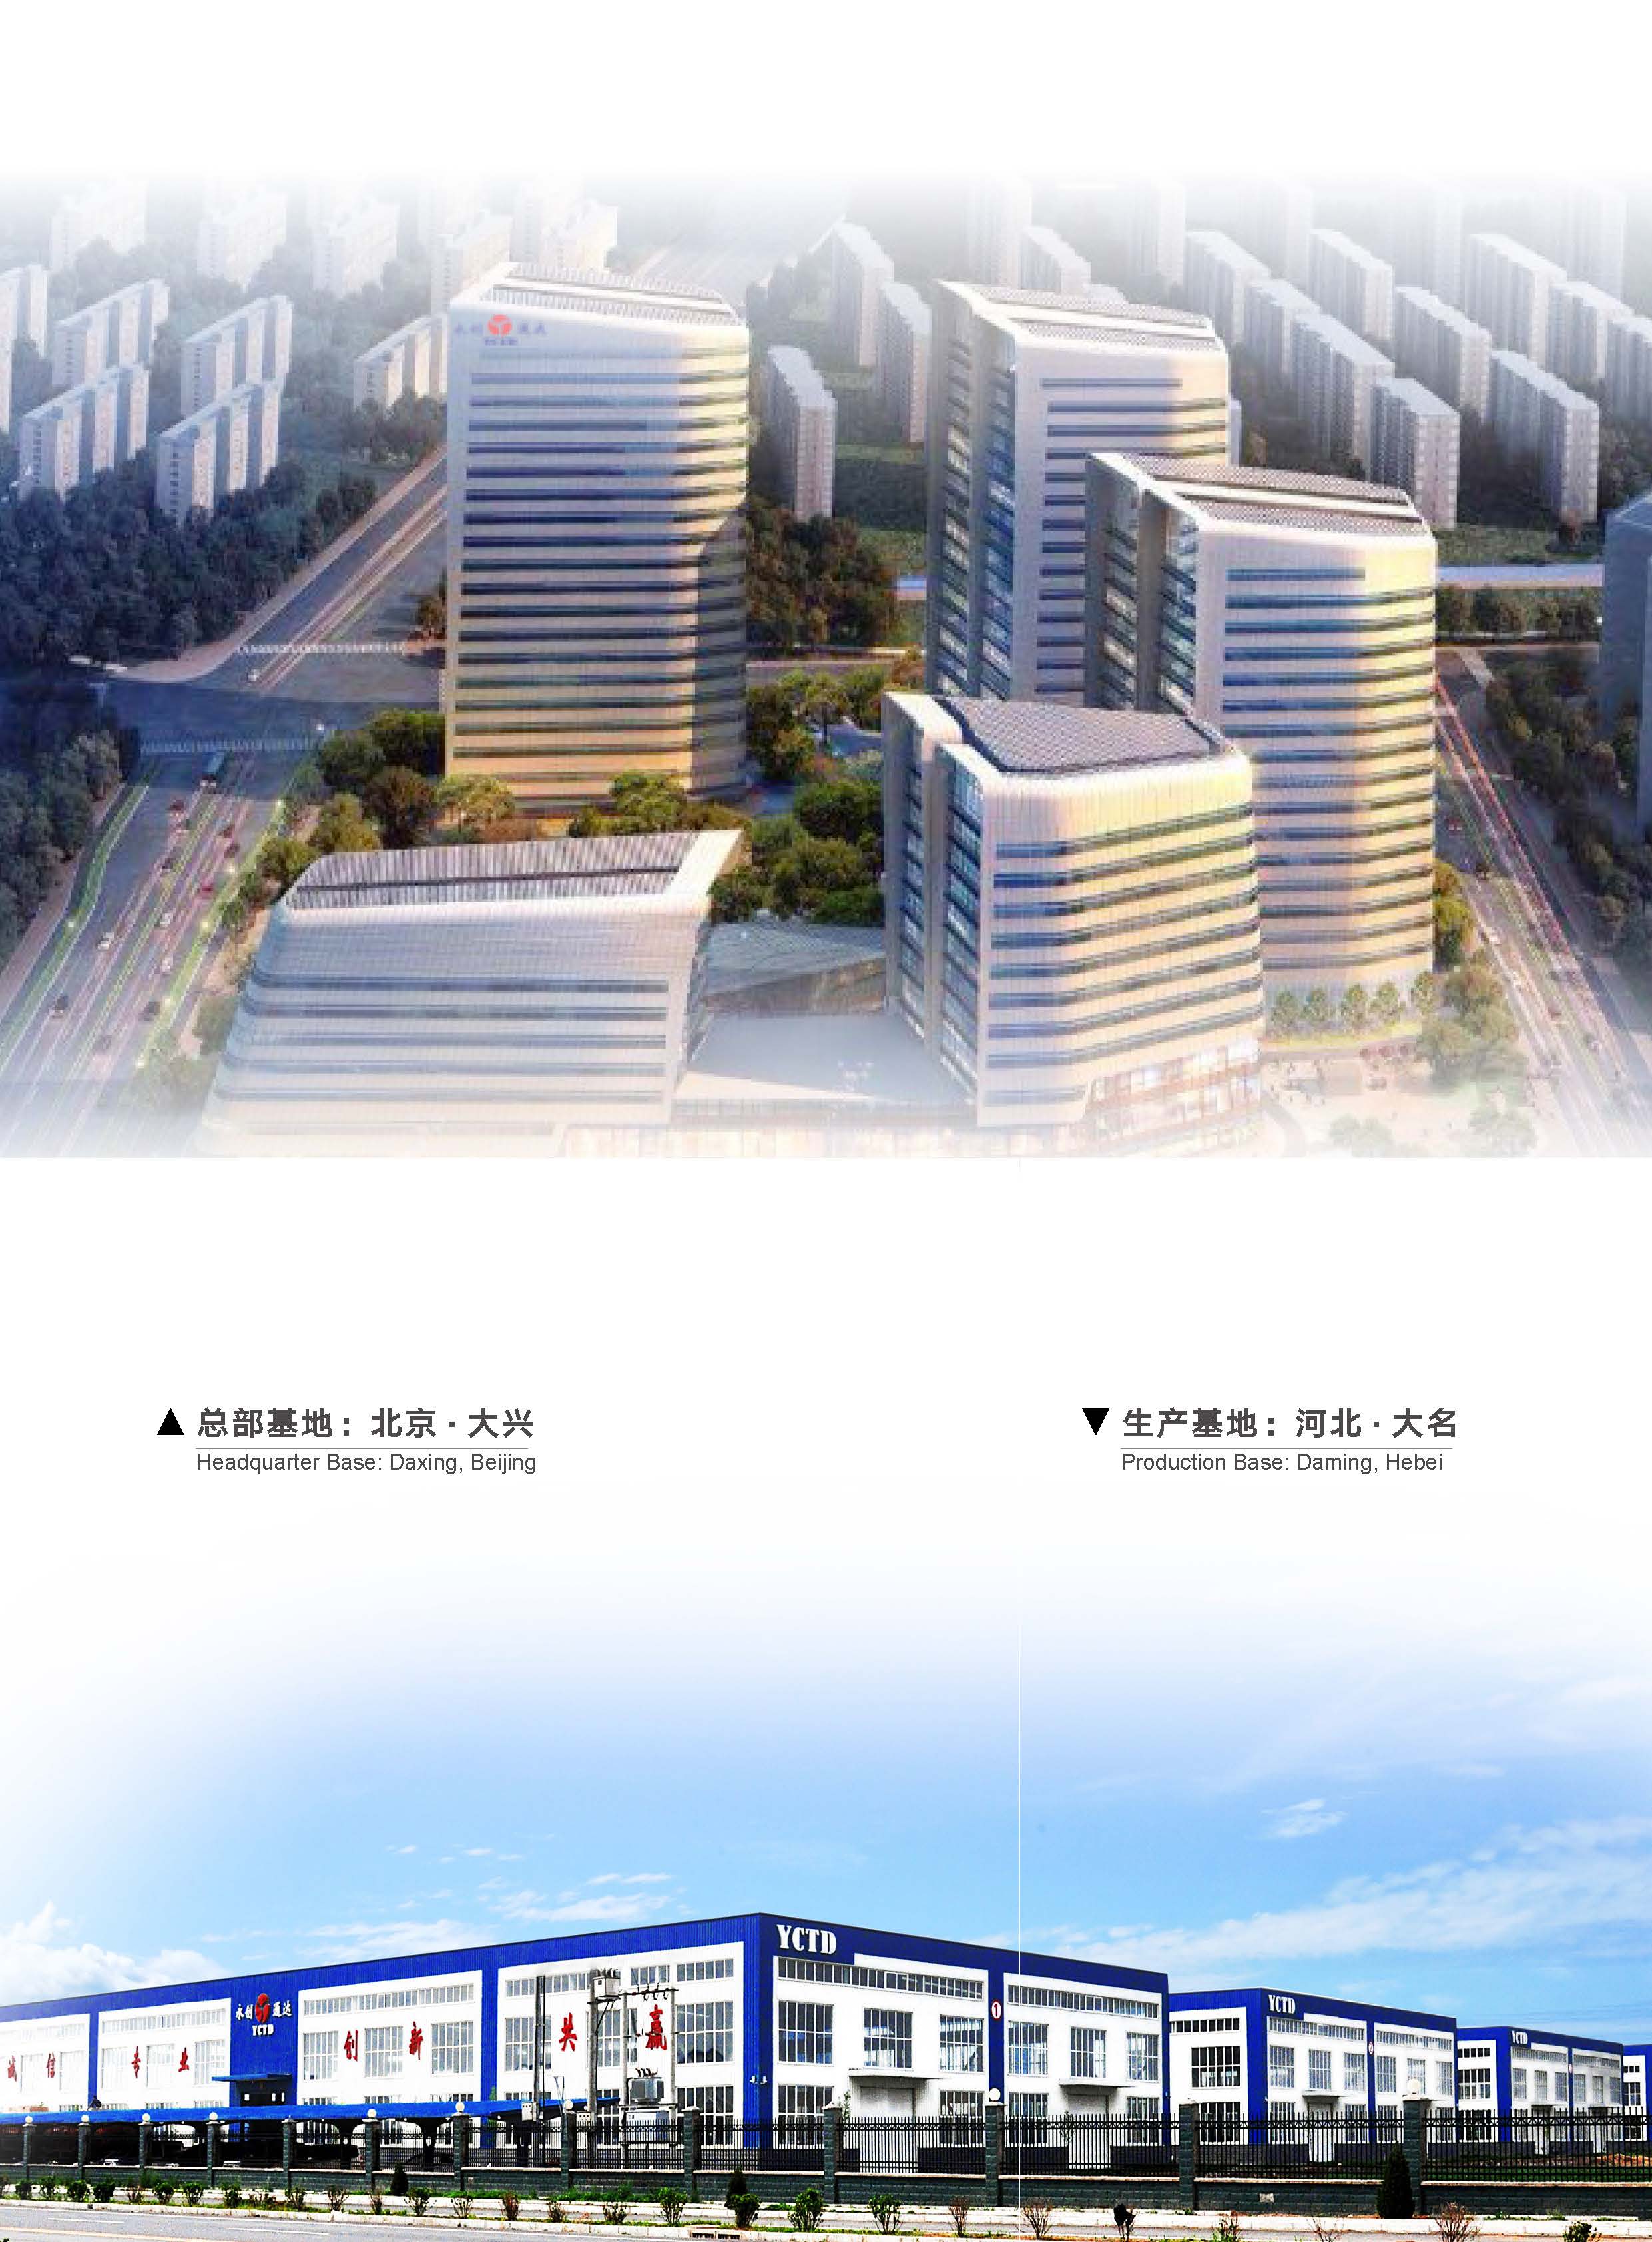 Beijing Y.C.T.D. Packaging Machinery Co.,Ltd